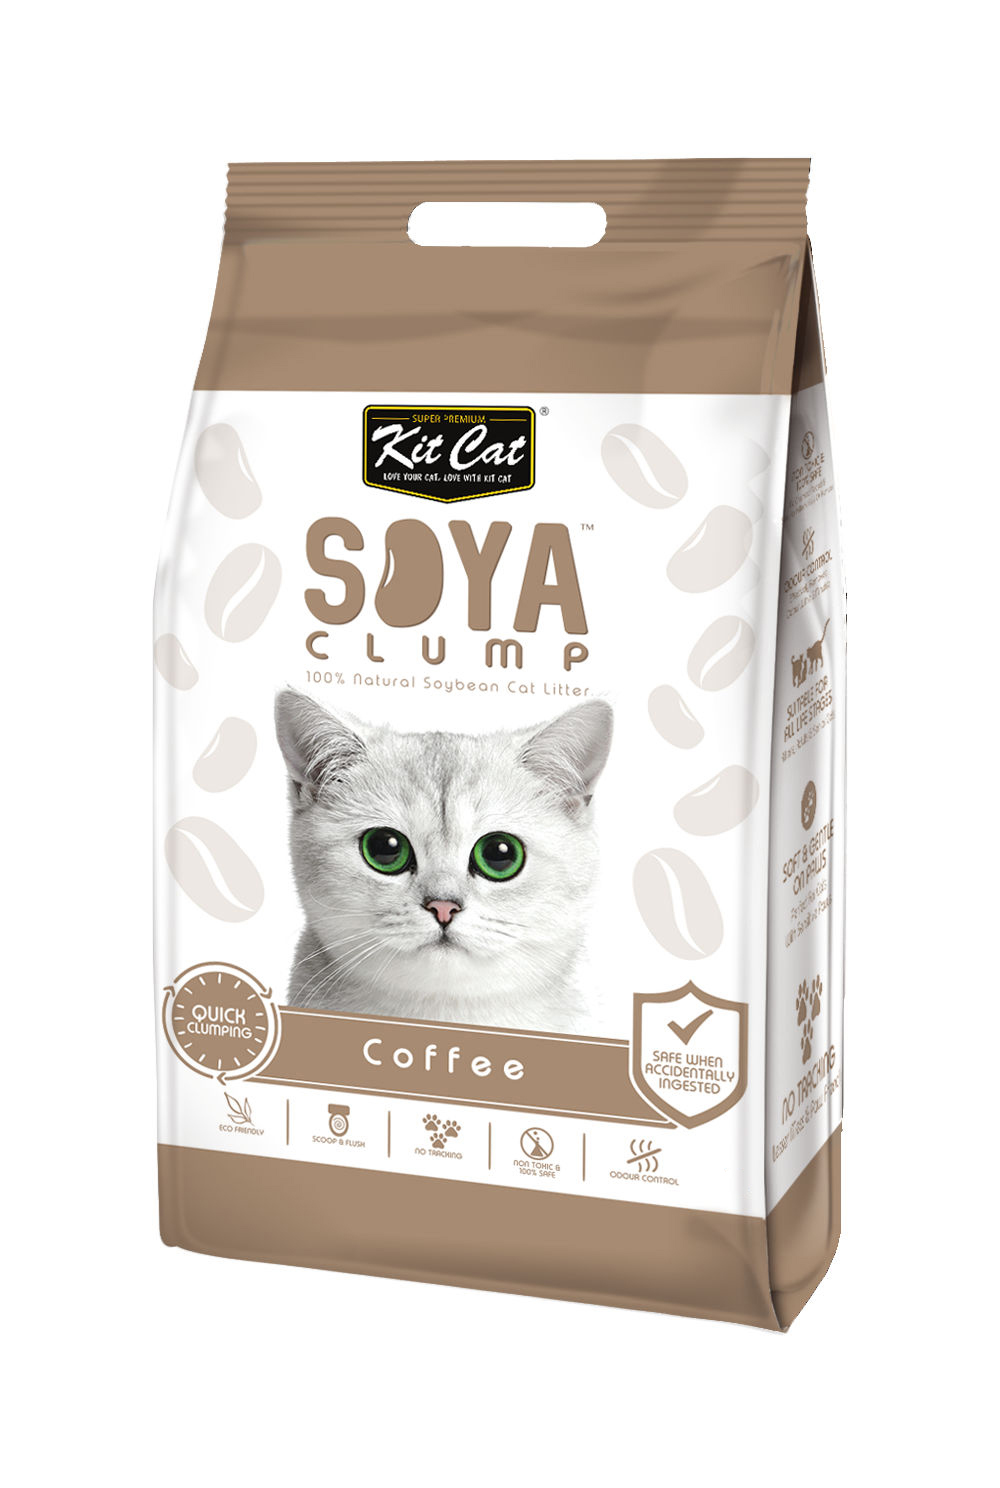 Кит Кэт Наполнитель SoyaClump Soybean Litter Coffee соевый комкующийся, Кофе, в ассортименте, Kit Cat 